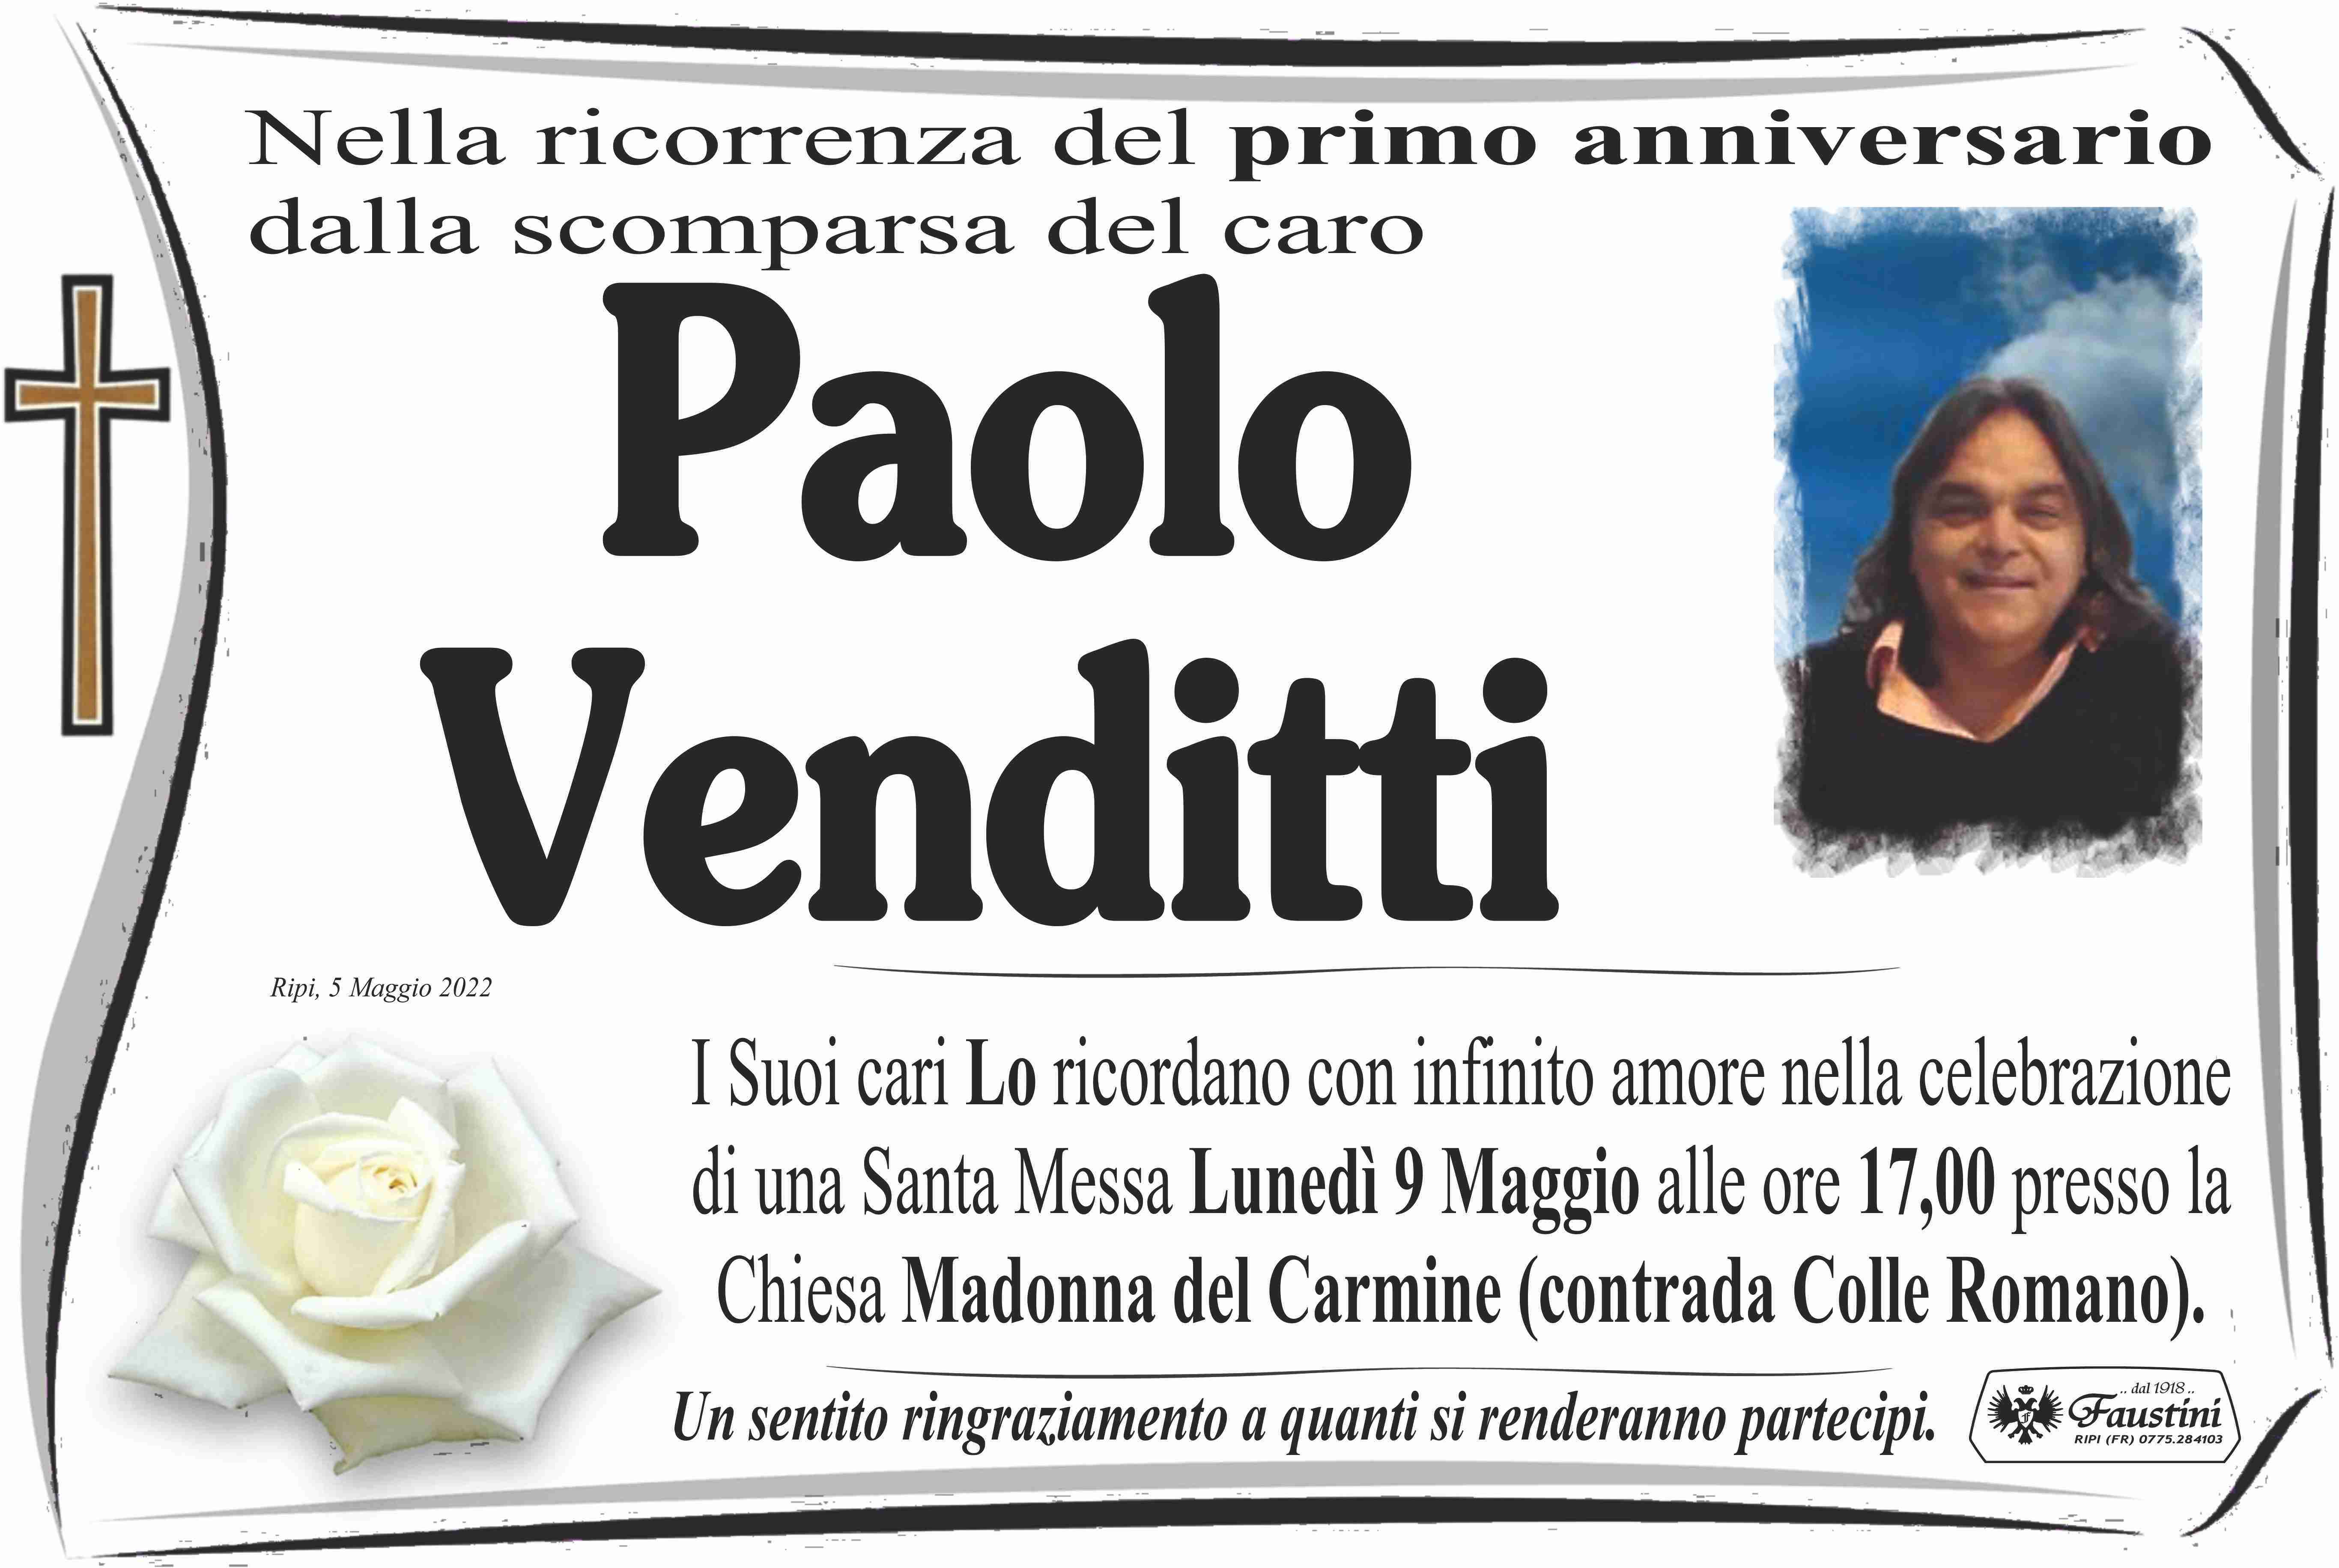 Paolo Venditti